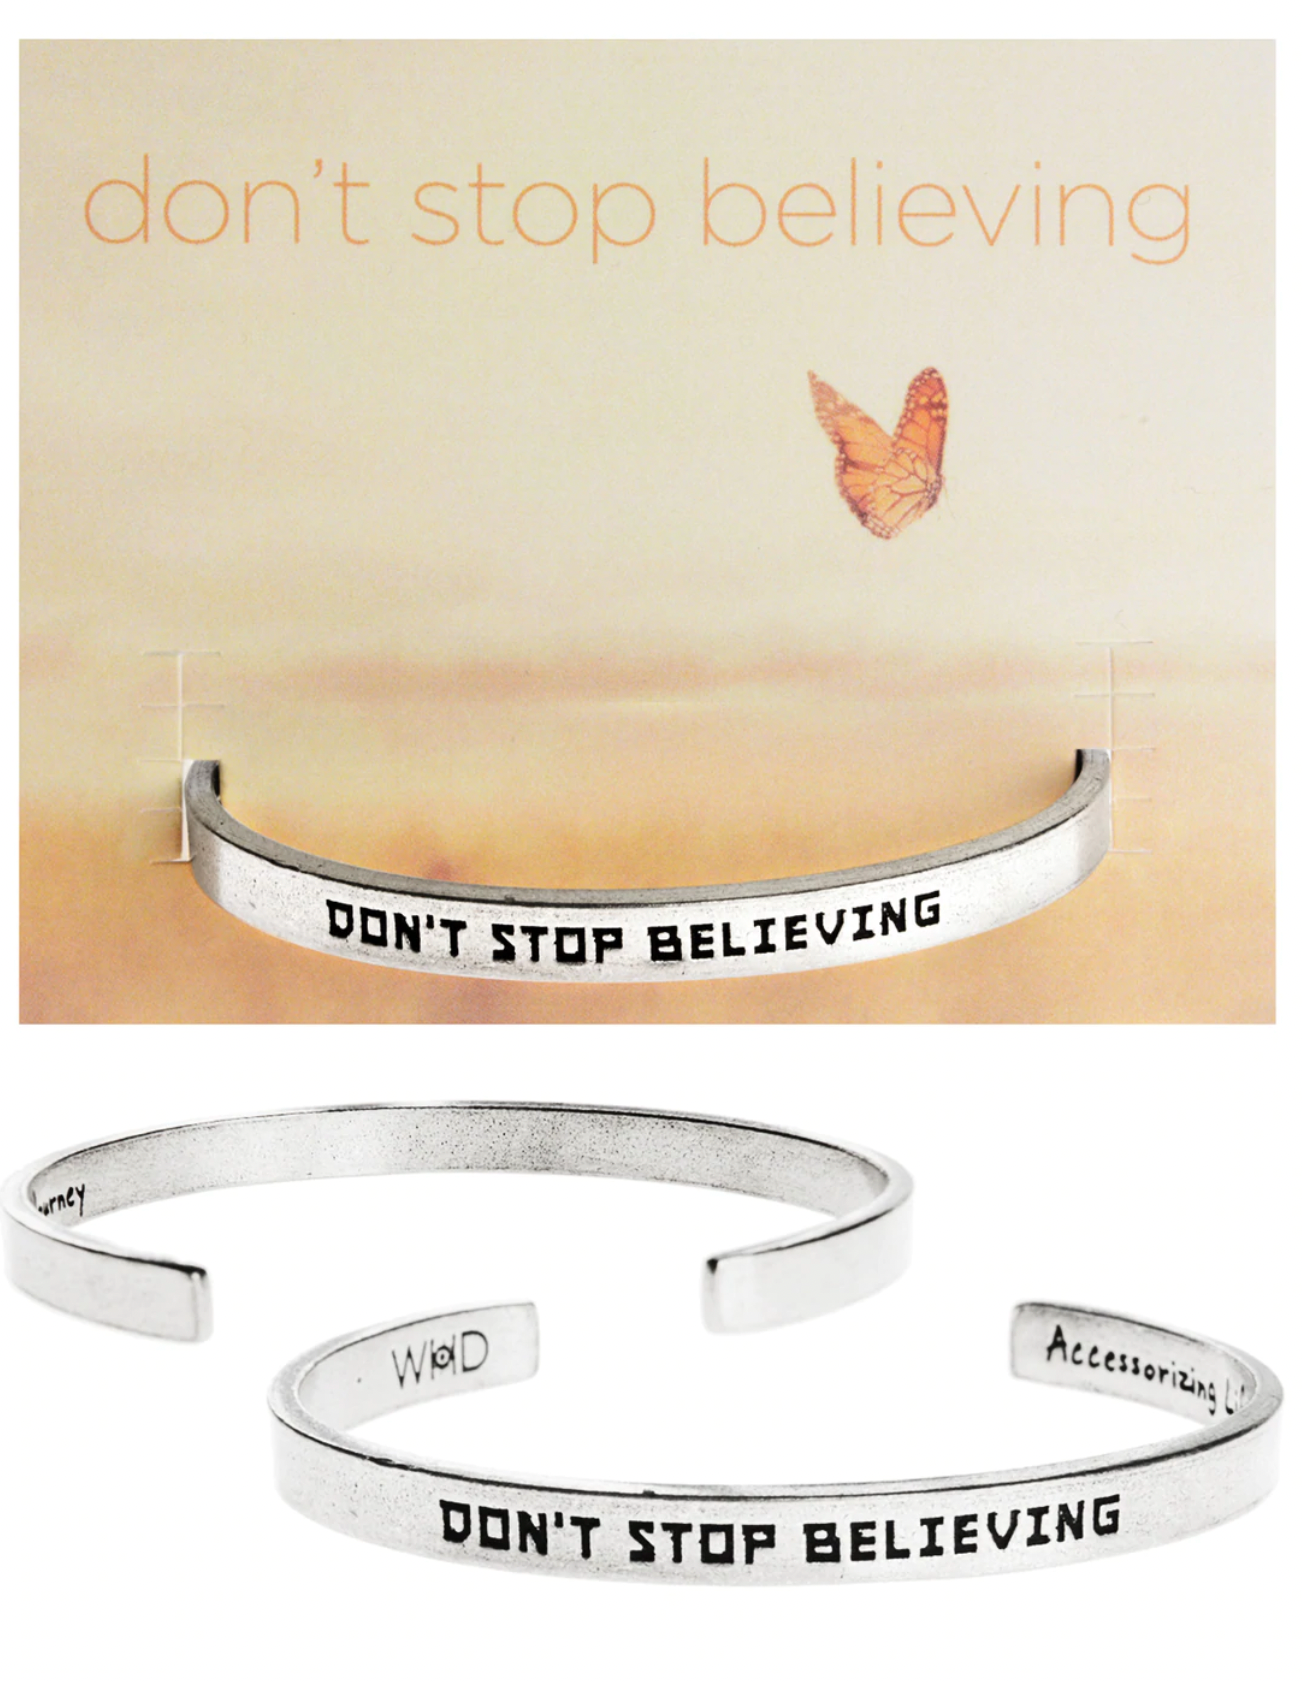 Don't Stop Believing Quotable Cuff Bracelet